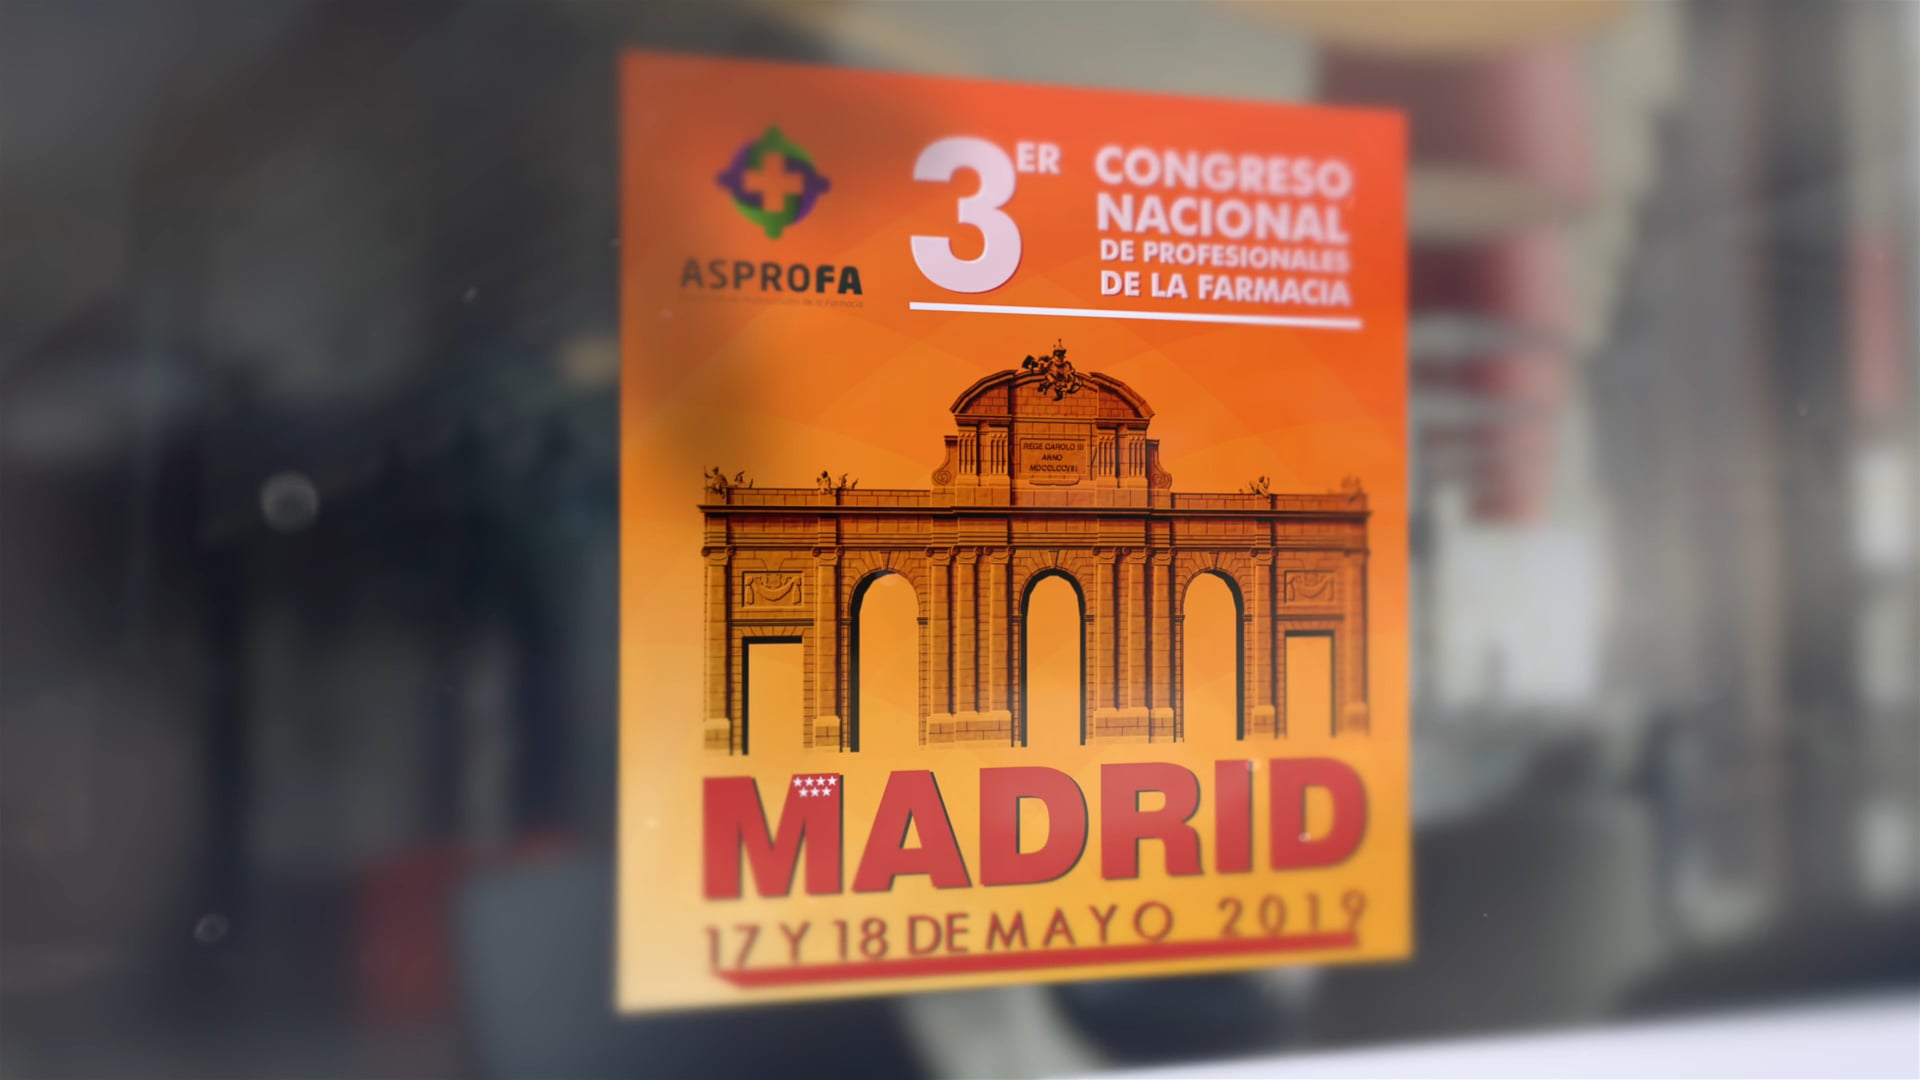 EVENTOS - III Congreso Nacional Farmacia ASPROFA